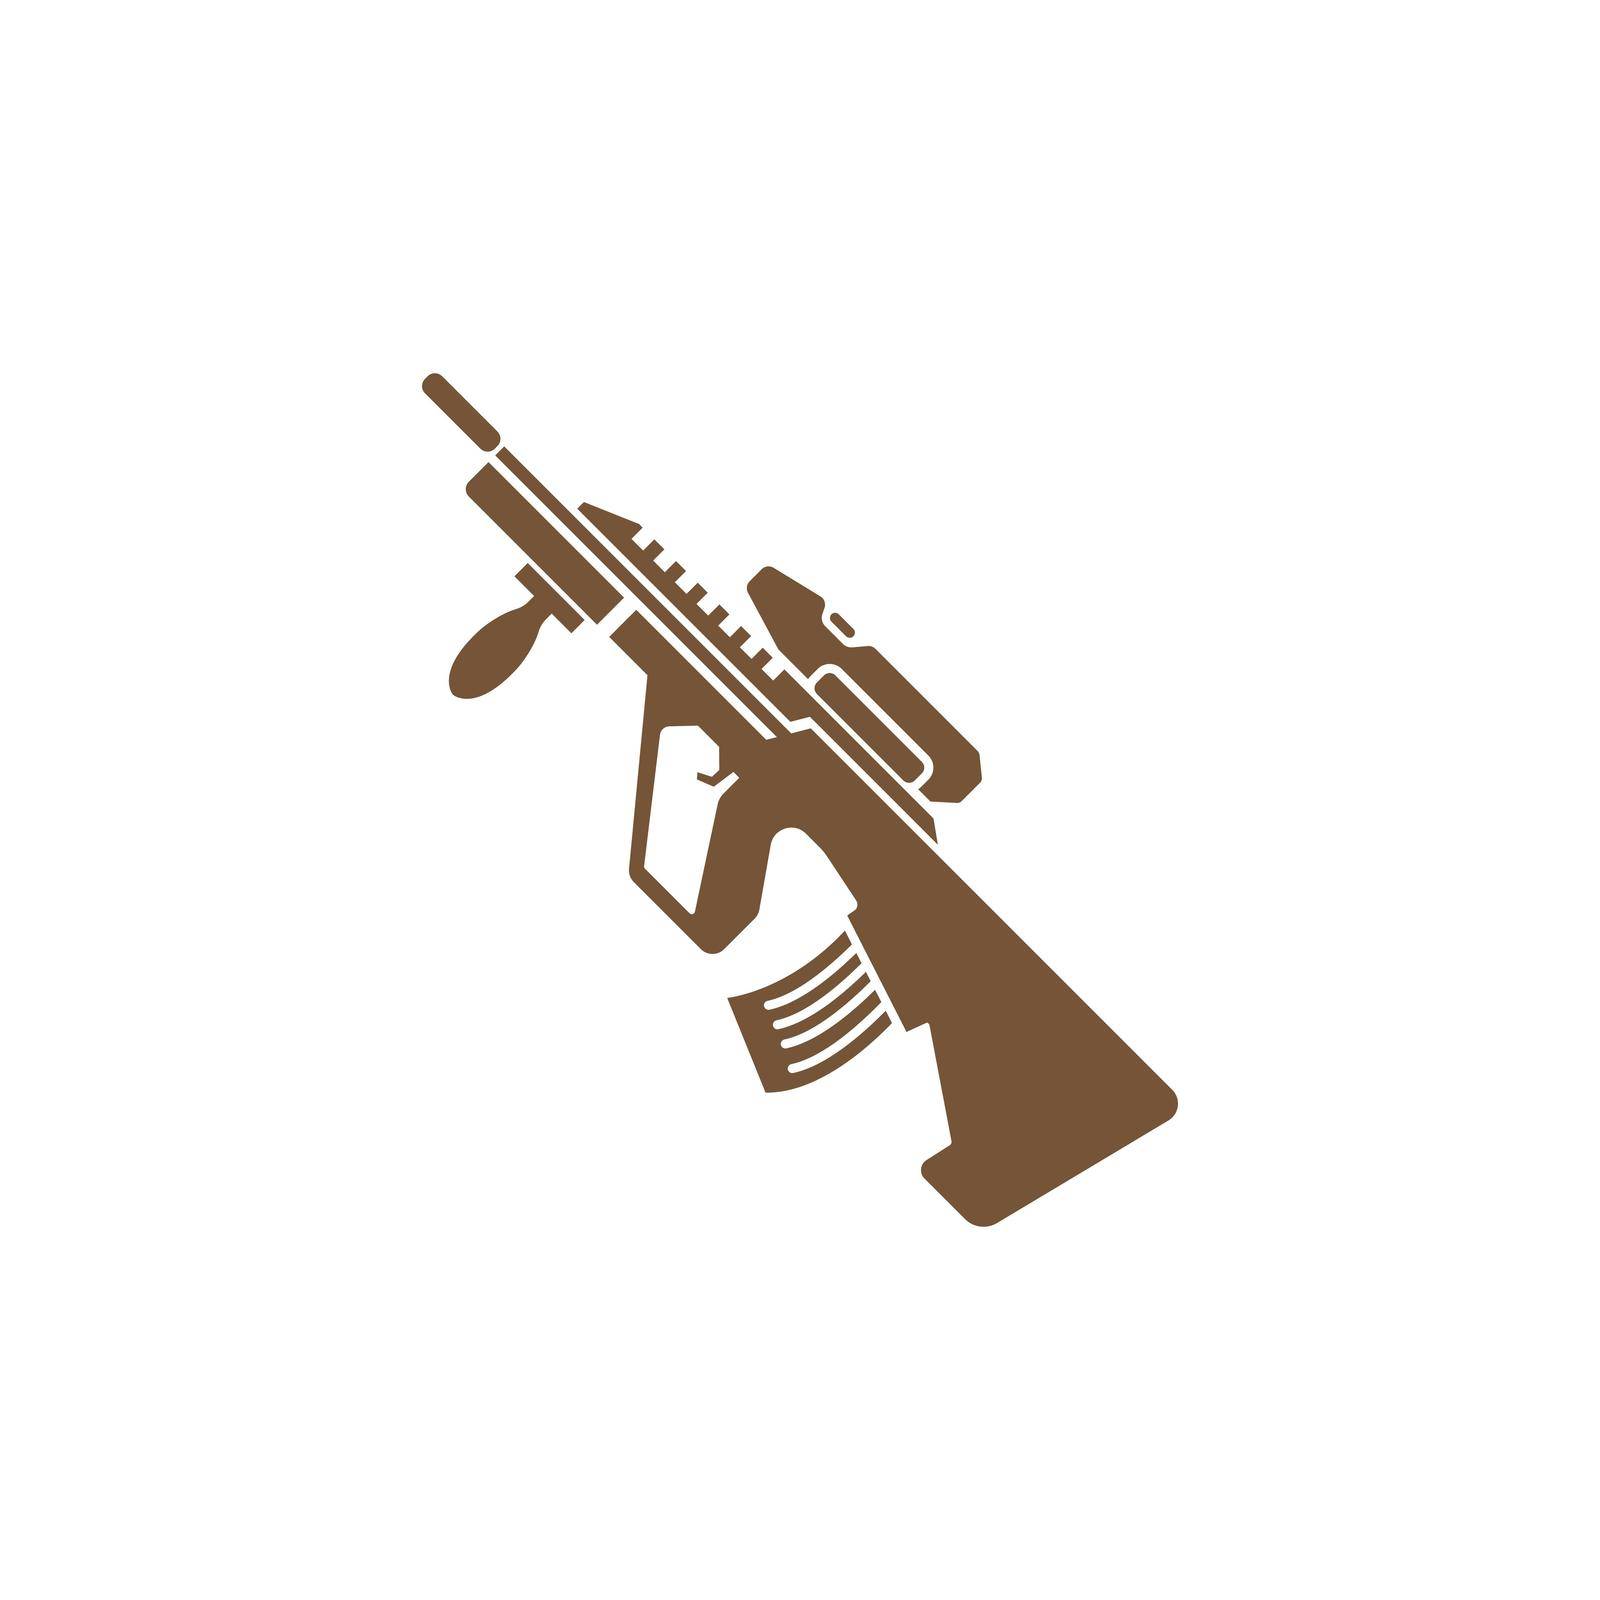 Gun, Firearms icon logo design illustration template vector